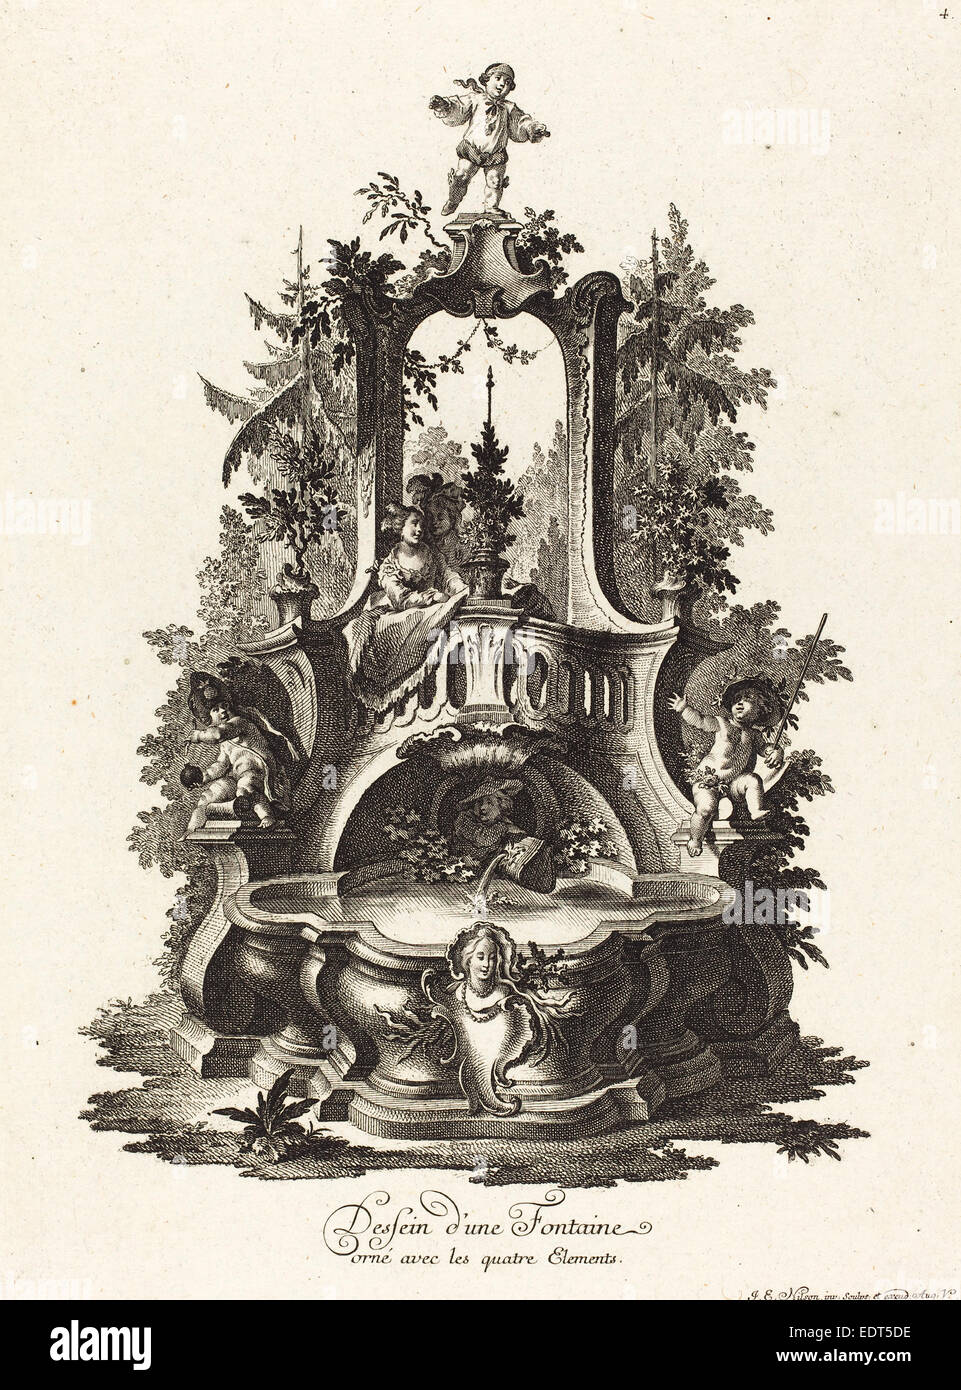 Johann Esaias Nilson (German, 1721 - 1788), Dessein d'une Fontaine orné avec les quatre Elements (Design for a Fountain) Stock Photo